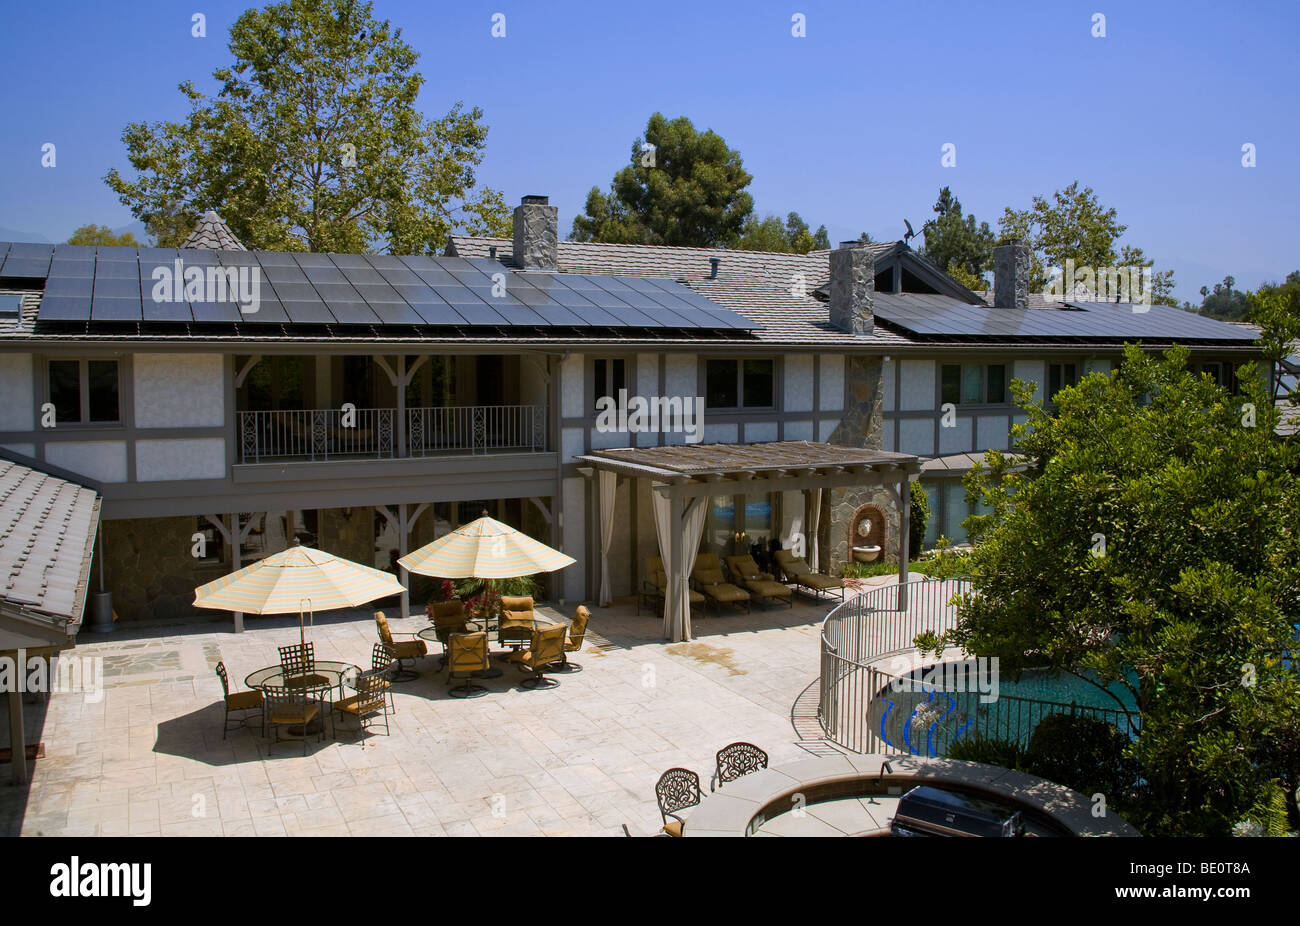 Casa residenziale con array solare sul tetto. La Ca ada, Los Angeles, California, Stati Uniti d'America Foto Stock